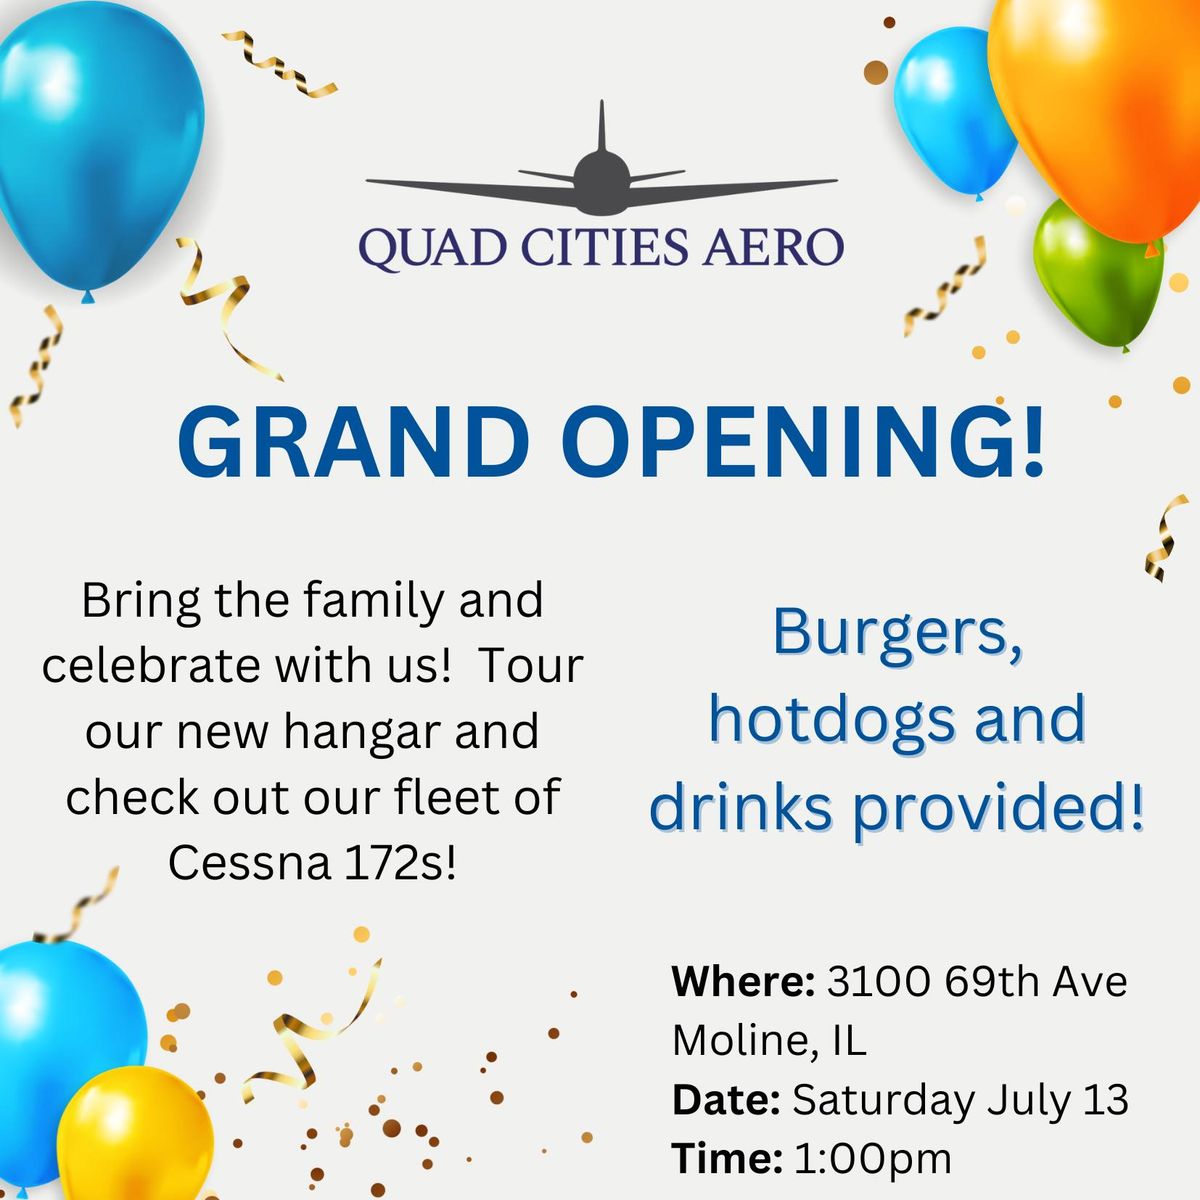 Grand Opening: Quad Cities Aero